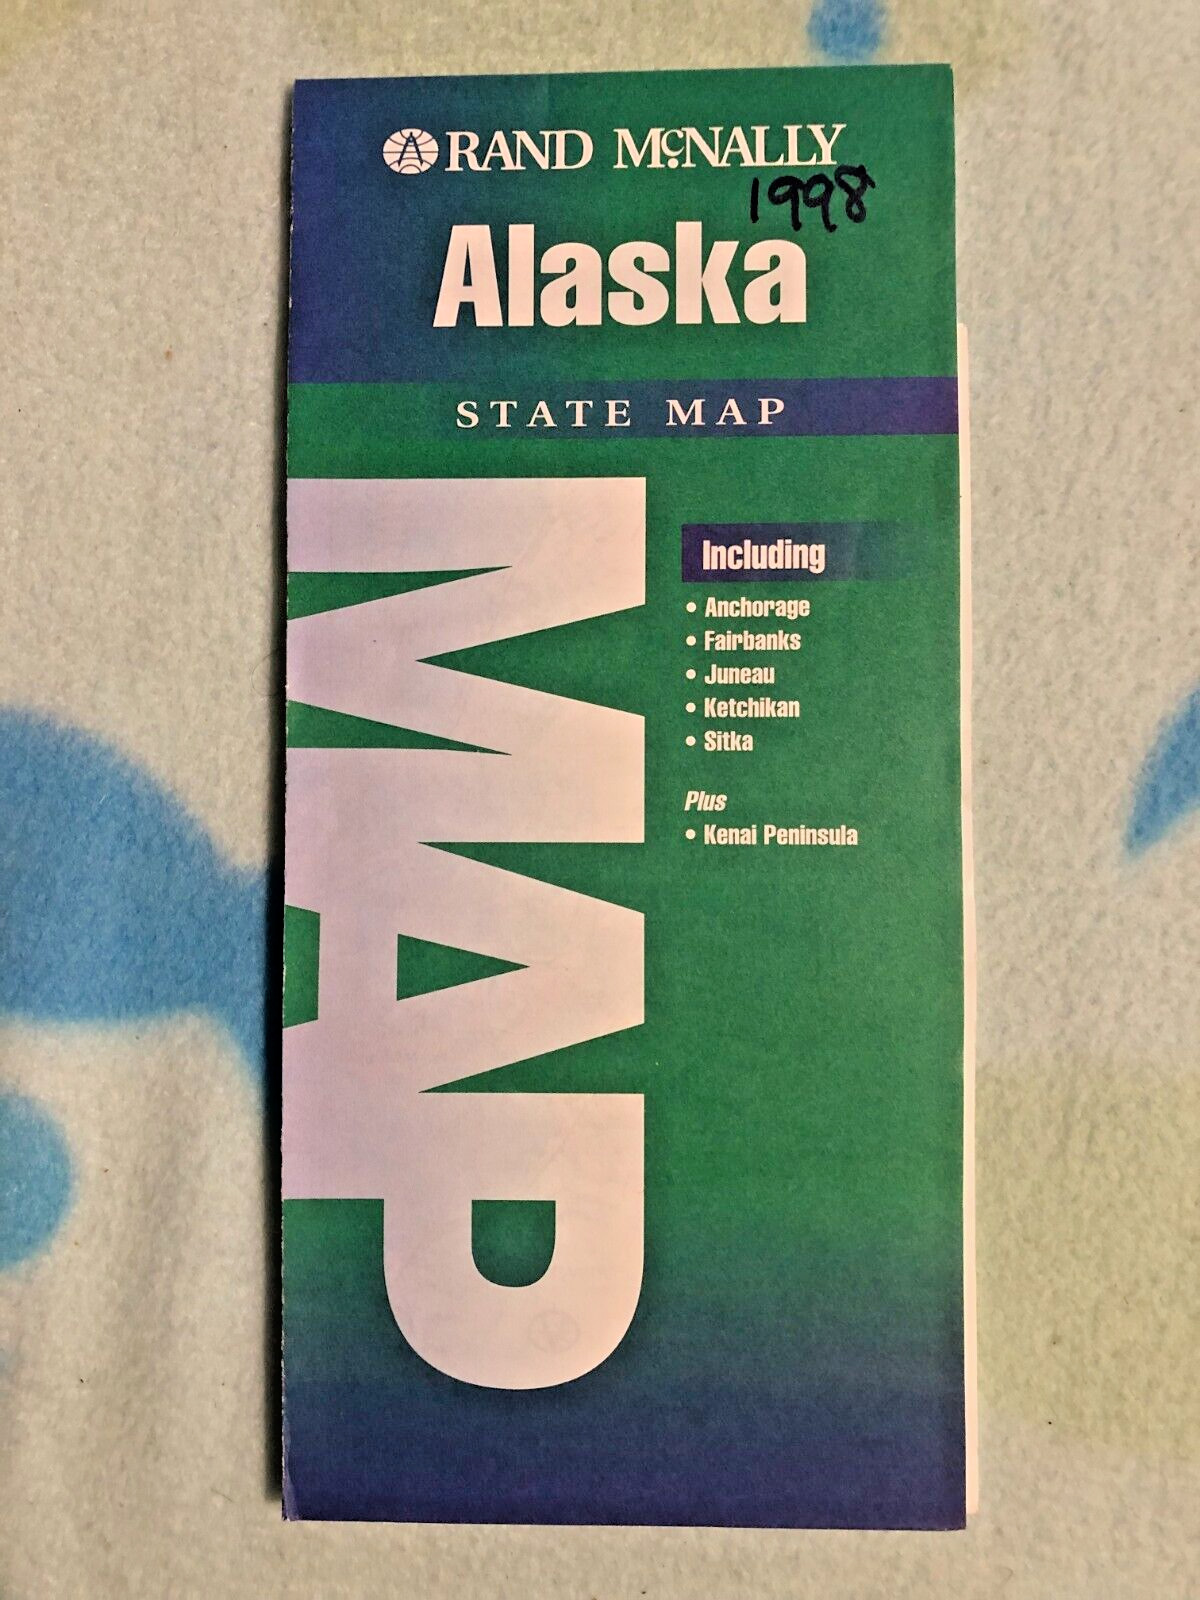 910 - Alaska State Map - 1998  - Rand Mcnally